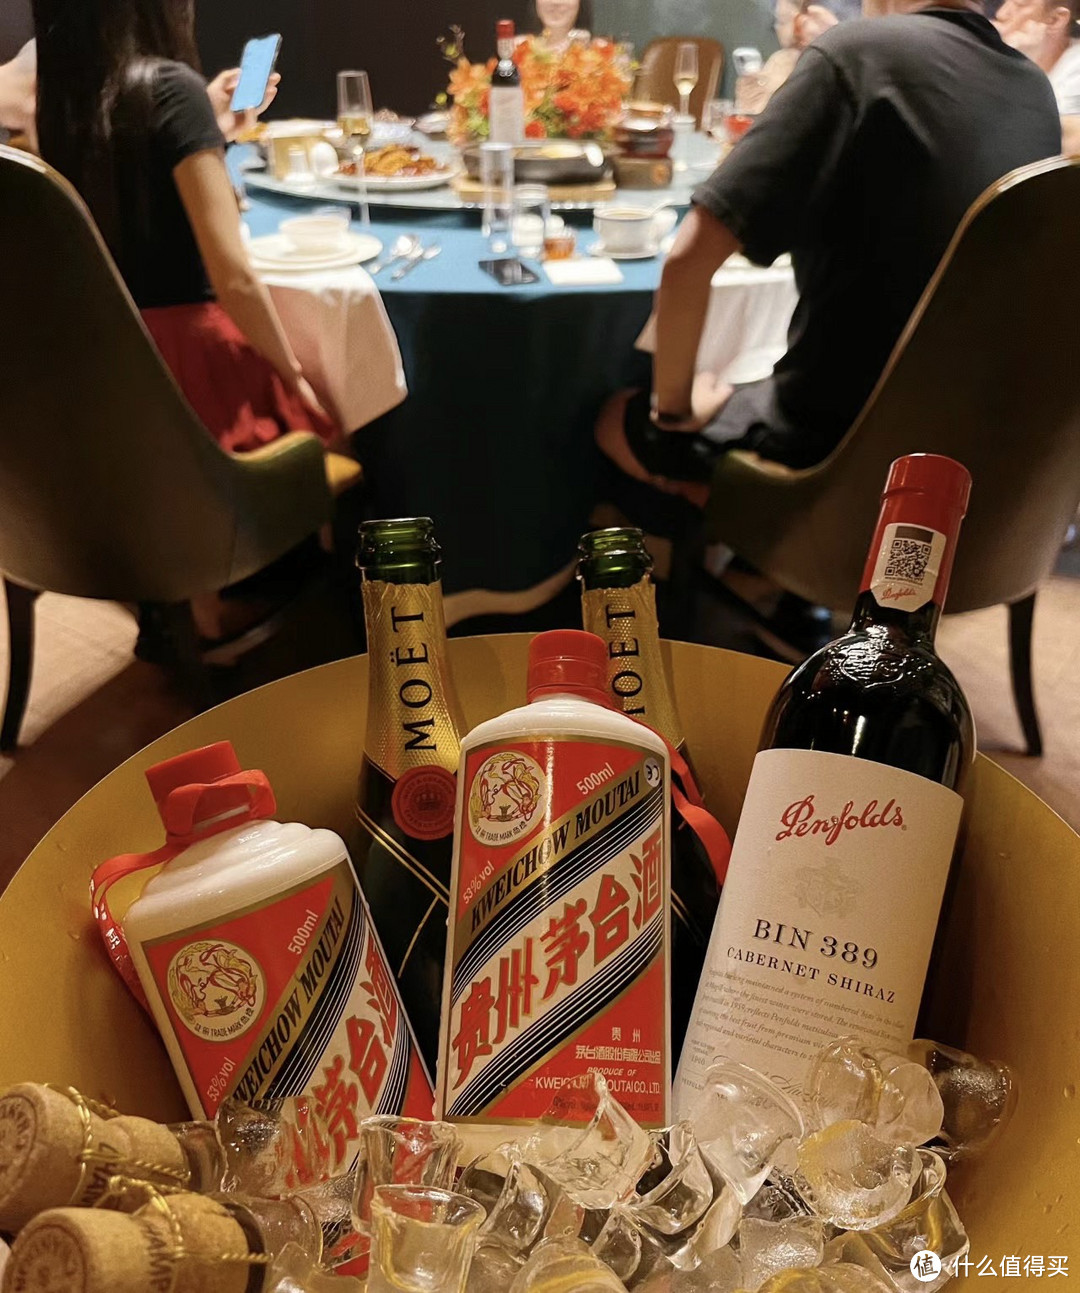 茅台是一种著名的白酒，中秋节是中国的重要传统节日，送茅台作为礼物寓意着“美酒送佳节，深情厚谊”。